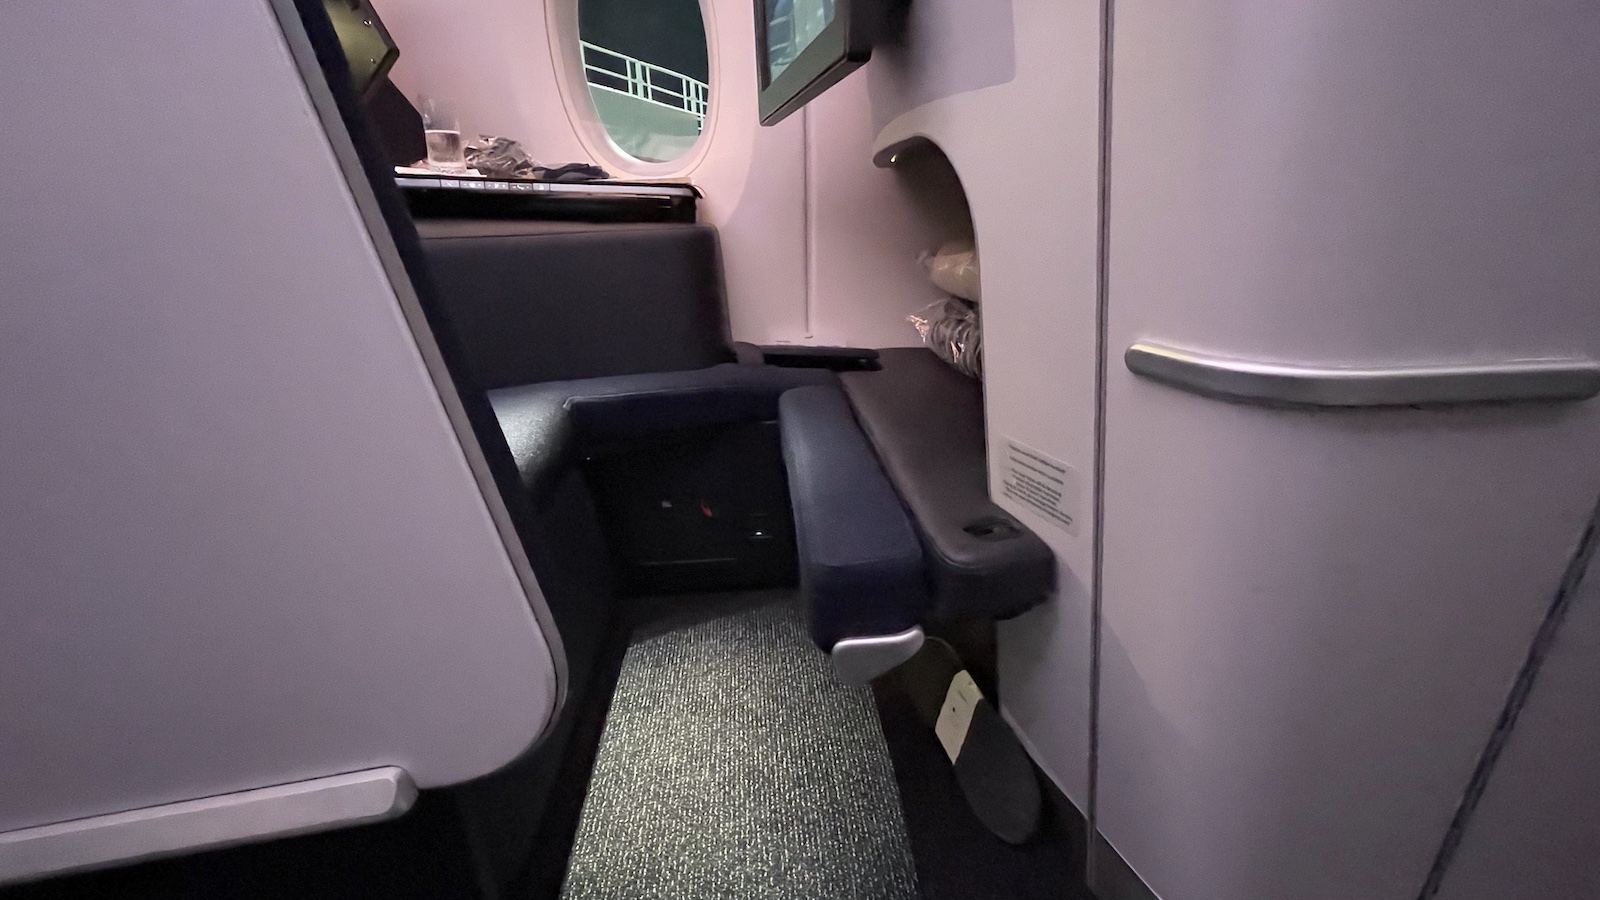 Finnair A350 Business Class Seat Leg Rest Folding Up to Create Bed